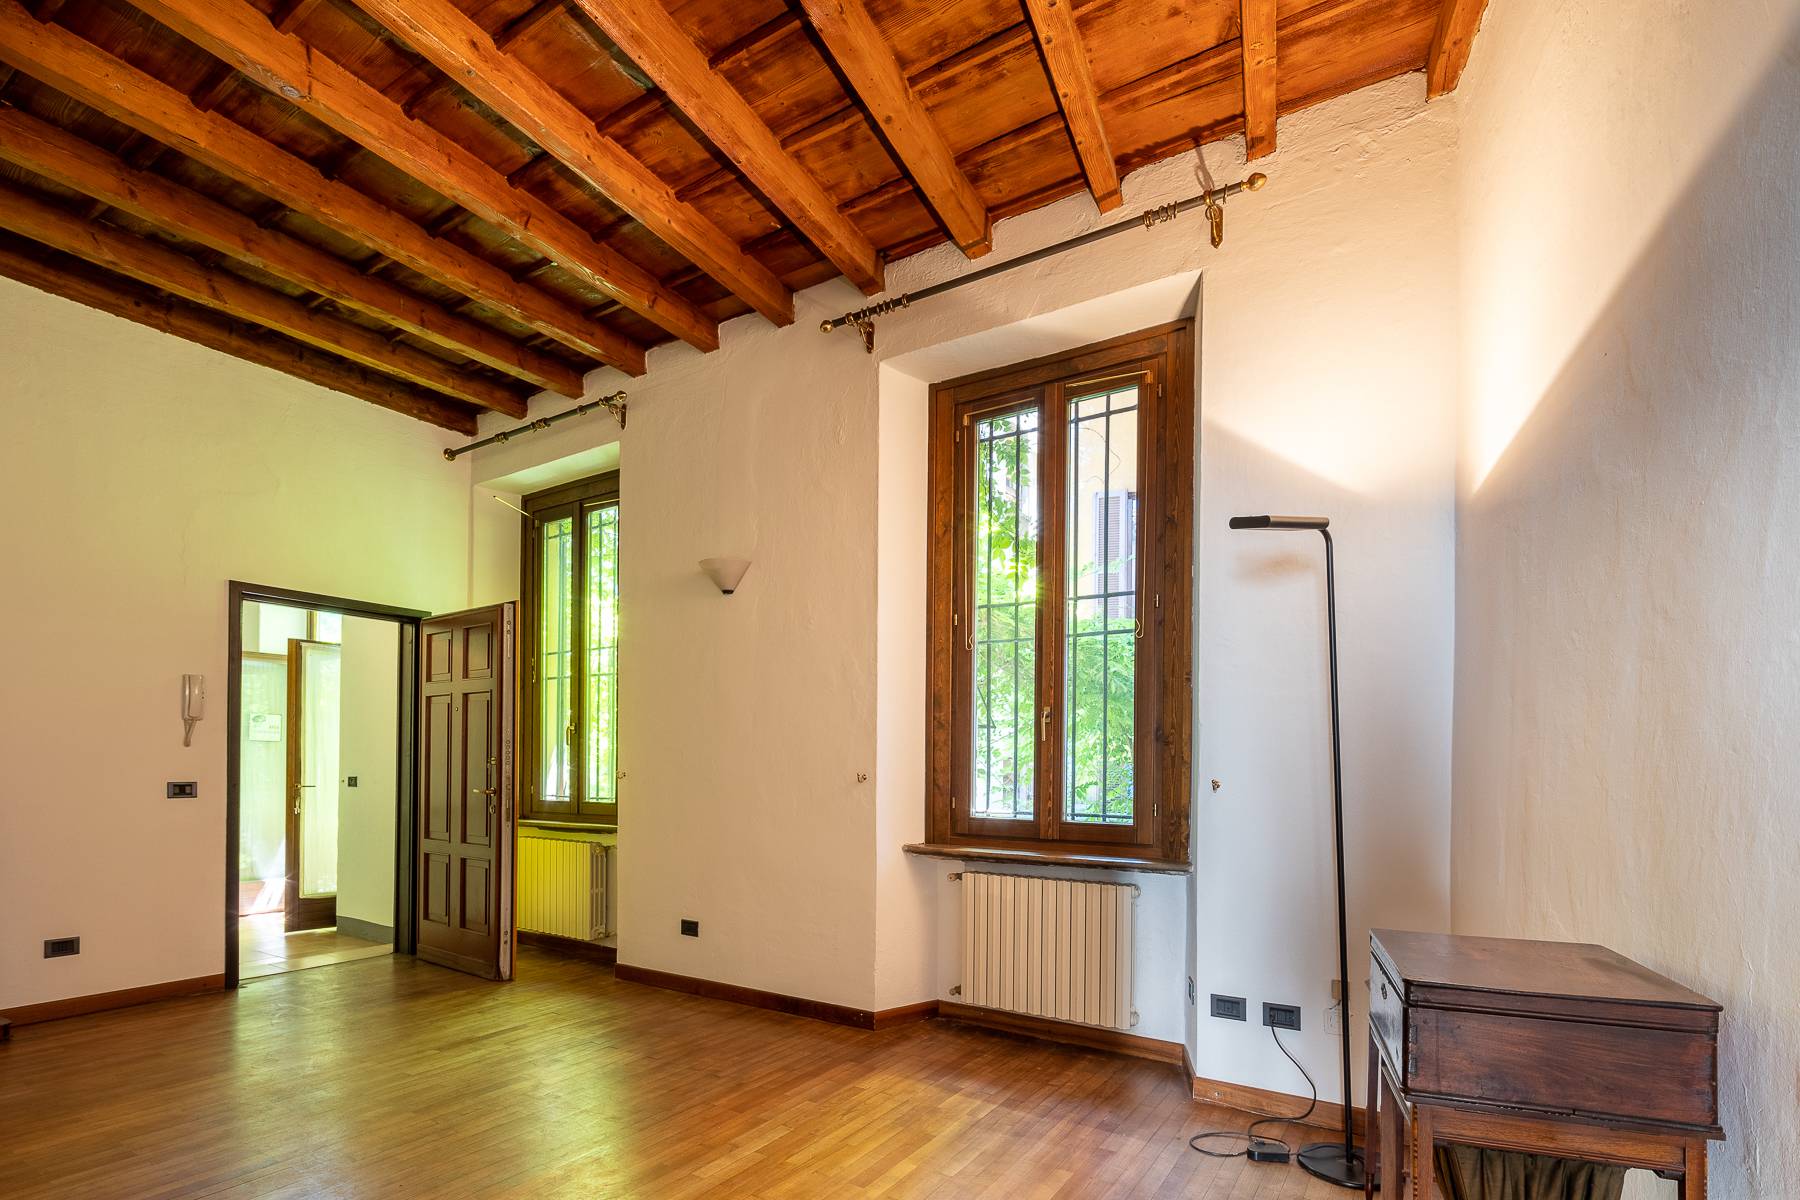 Casa indipendente in Vendita a Milano: 5 locali, 400 mq - Foto 7